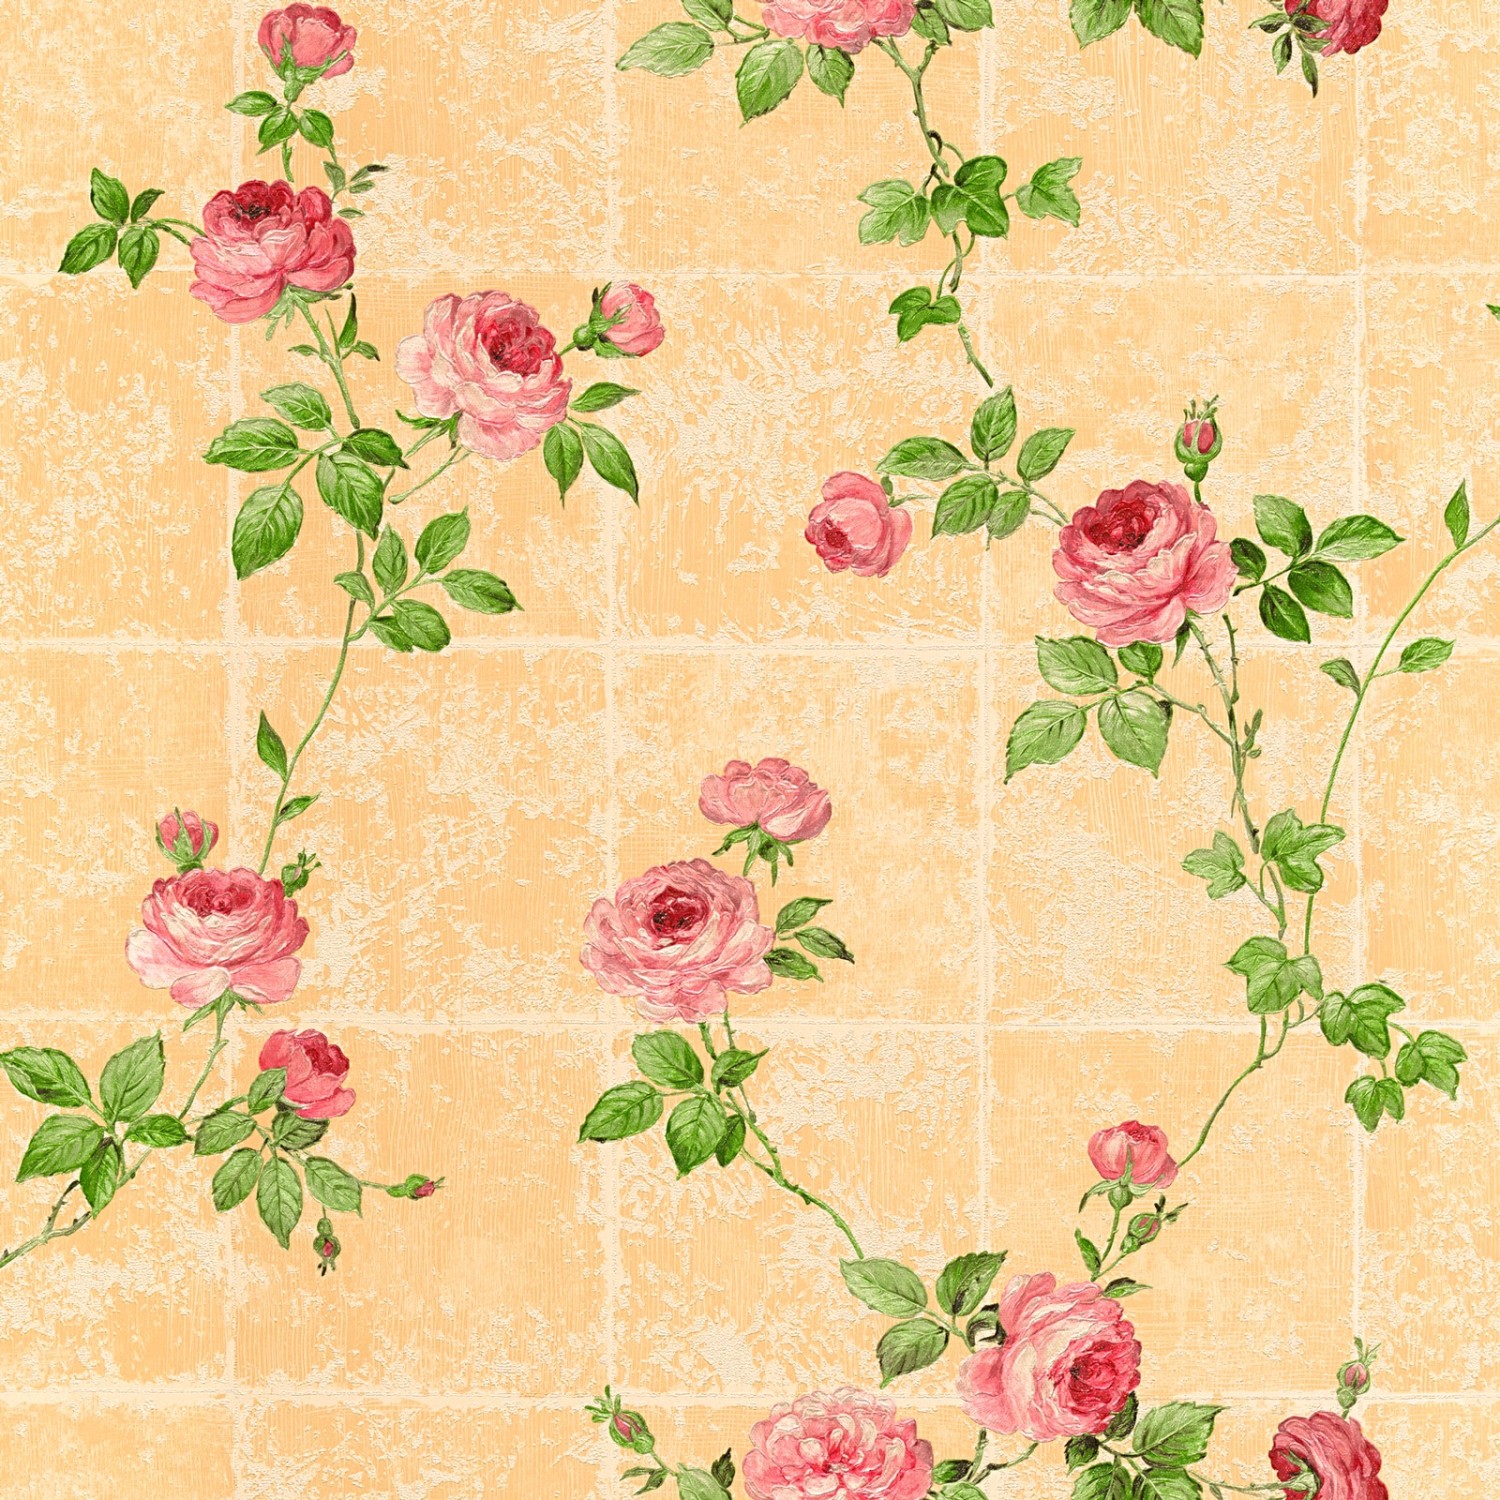 Bricoflor Apricot Tapete mit Rosen Romantische Vliestapete mit Blumen auf Fliesen Im Shabby Chic Vintage Blumentapete in